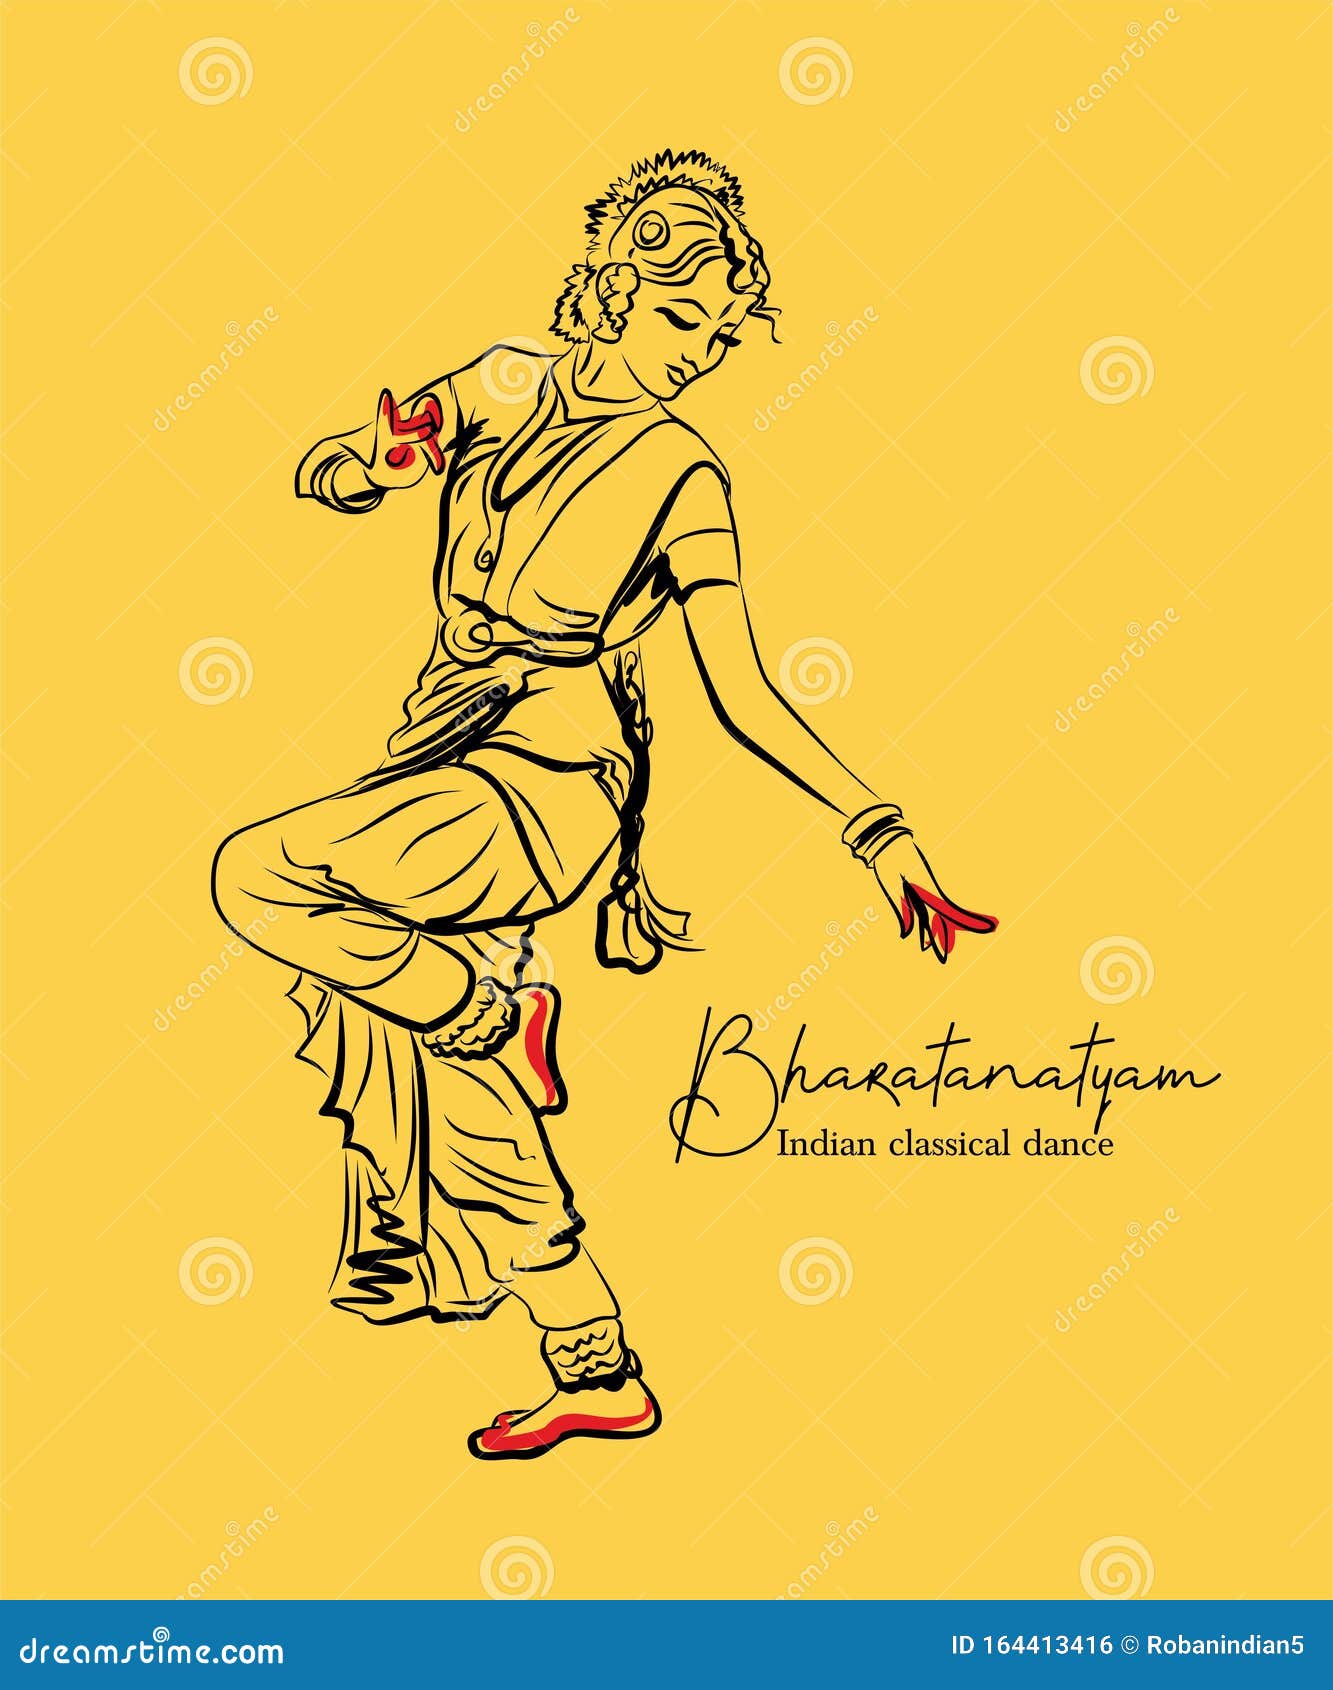 Pencil work #bhartnatuam #classic350 #classicaldance #classicalmusic  #classicalart #indiancultures #fok #indiandance #indiandancer… | Instagram